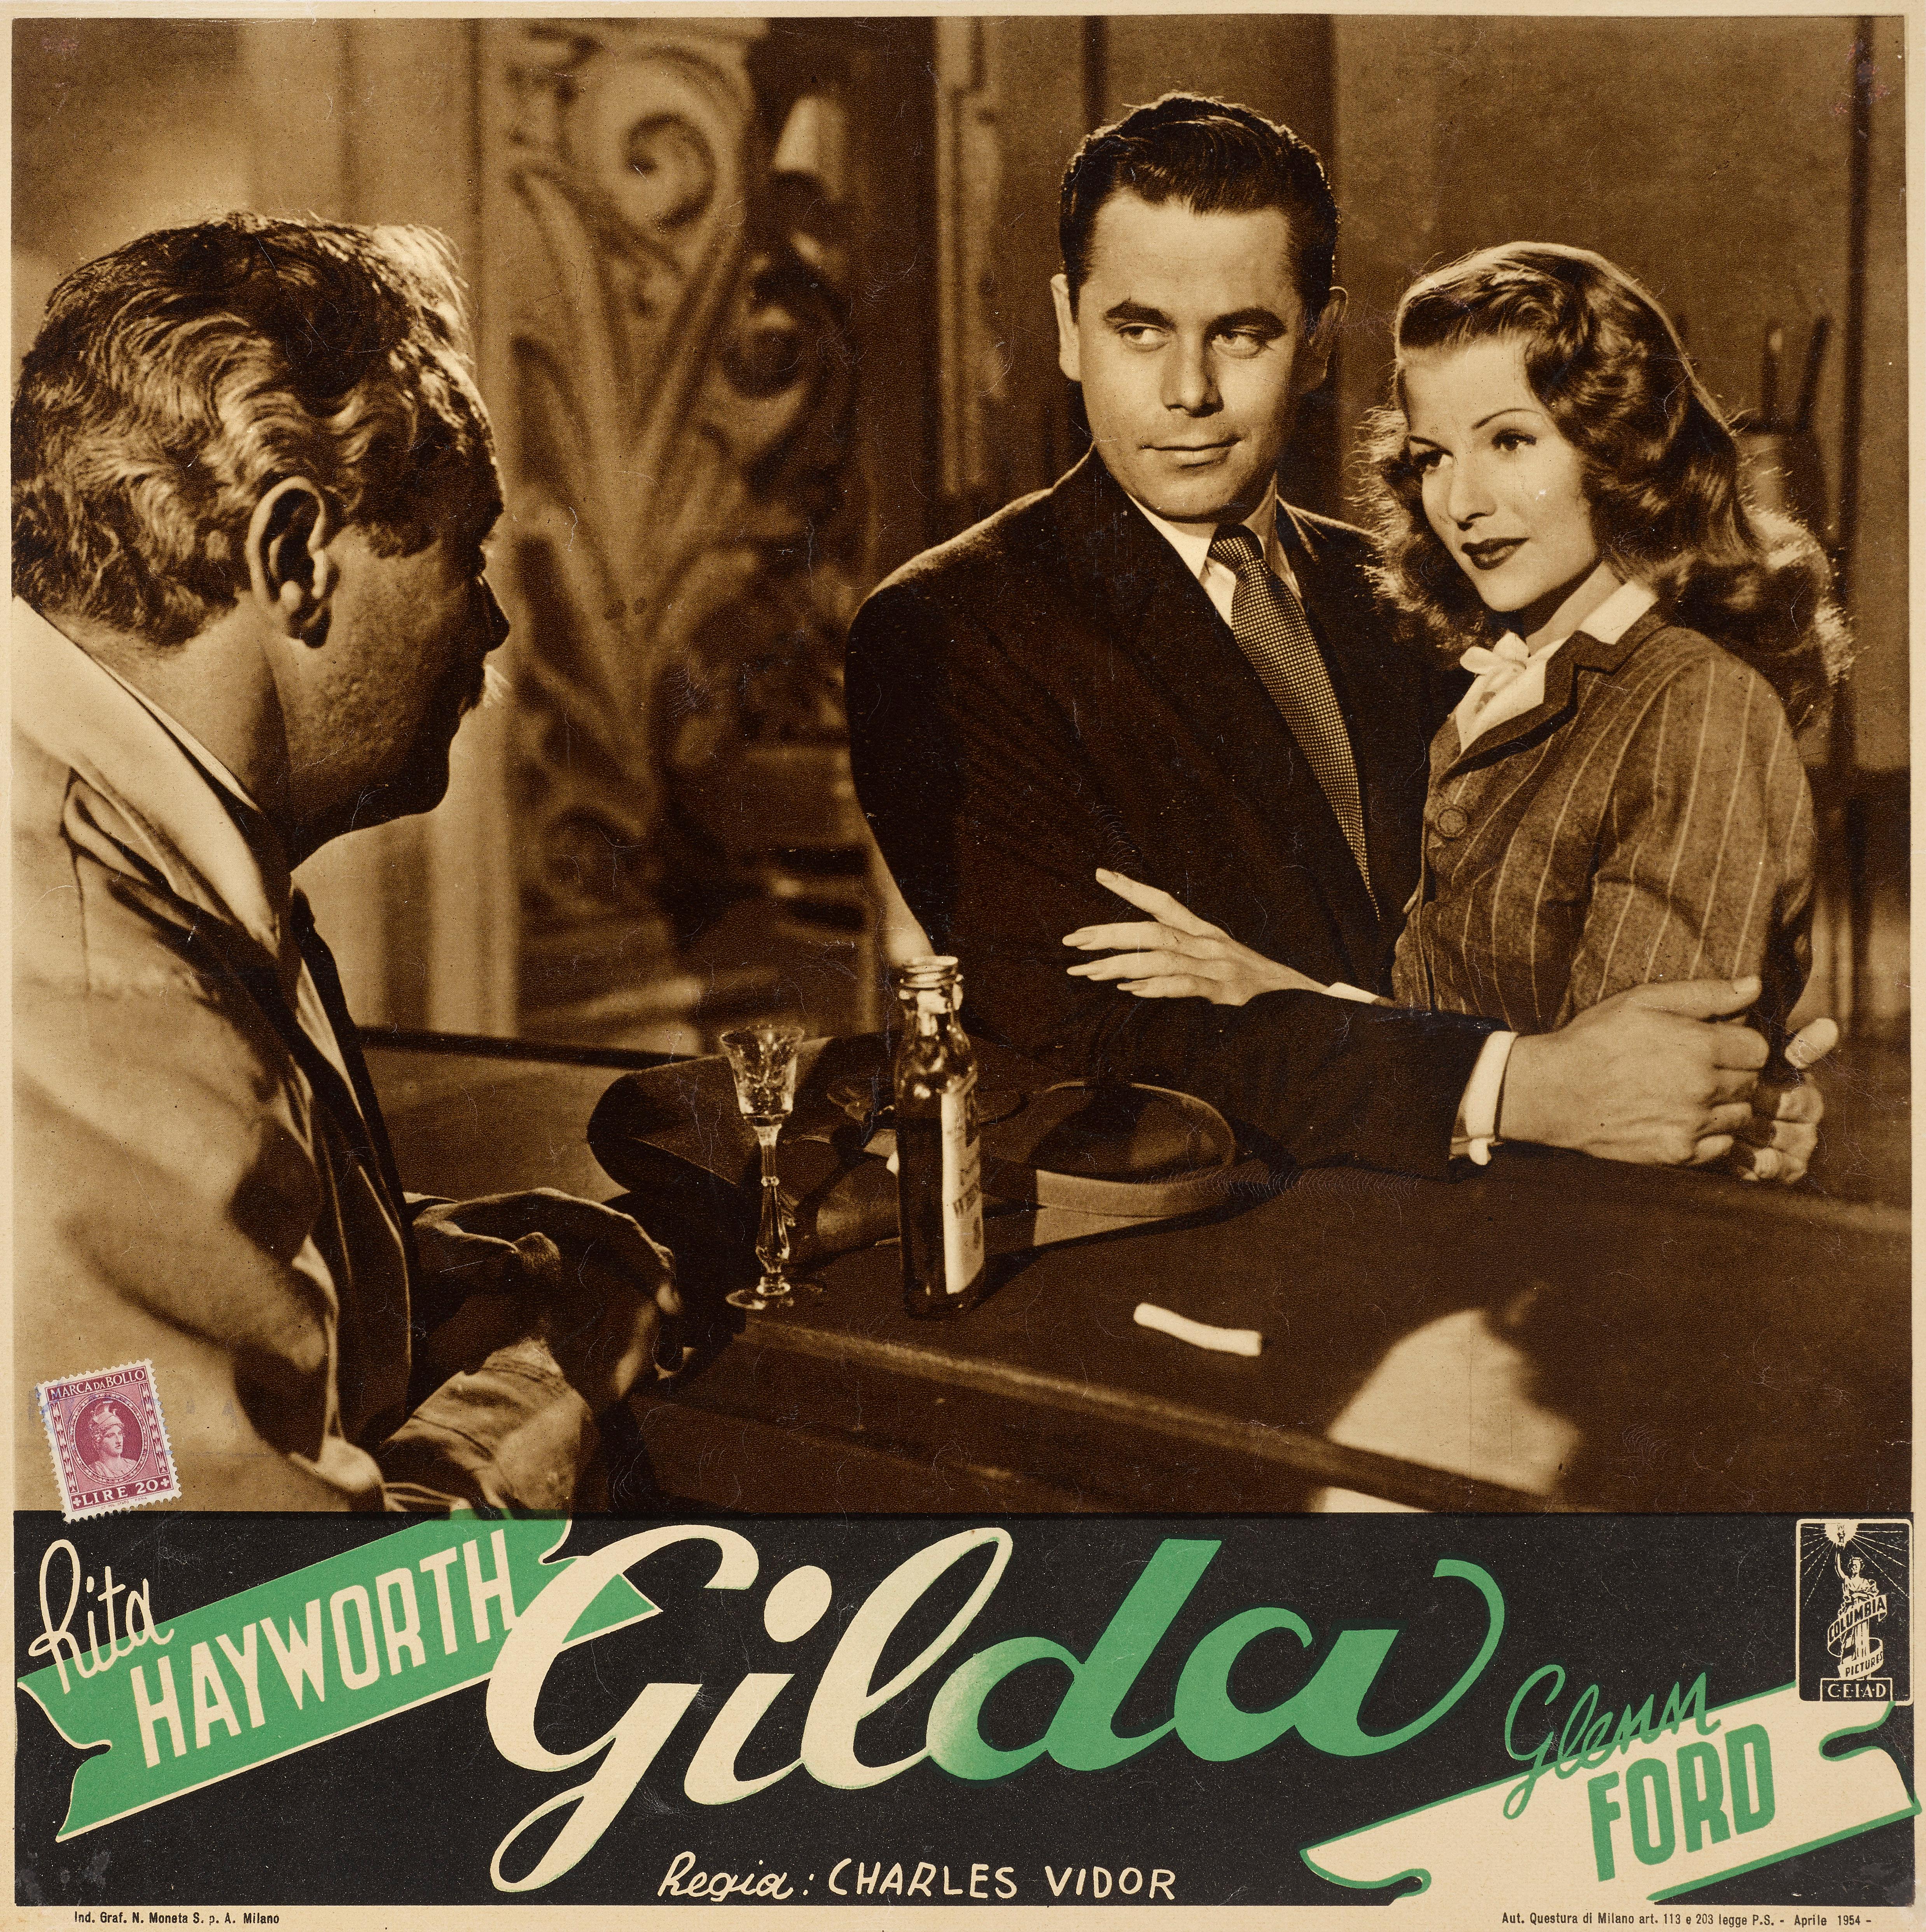 Affiche originale de film italien conçue pour être utilisée dans le hall des cinémas. Ce film noir classique de 1946 met en vedette Rita Hayworth, Glenn Ford et a été réalisé par Charles Vidor. Il y a un timbre sur cette pièce pour montrer que la